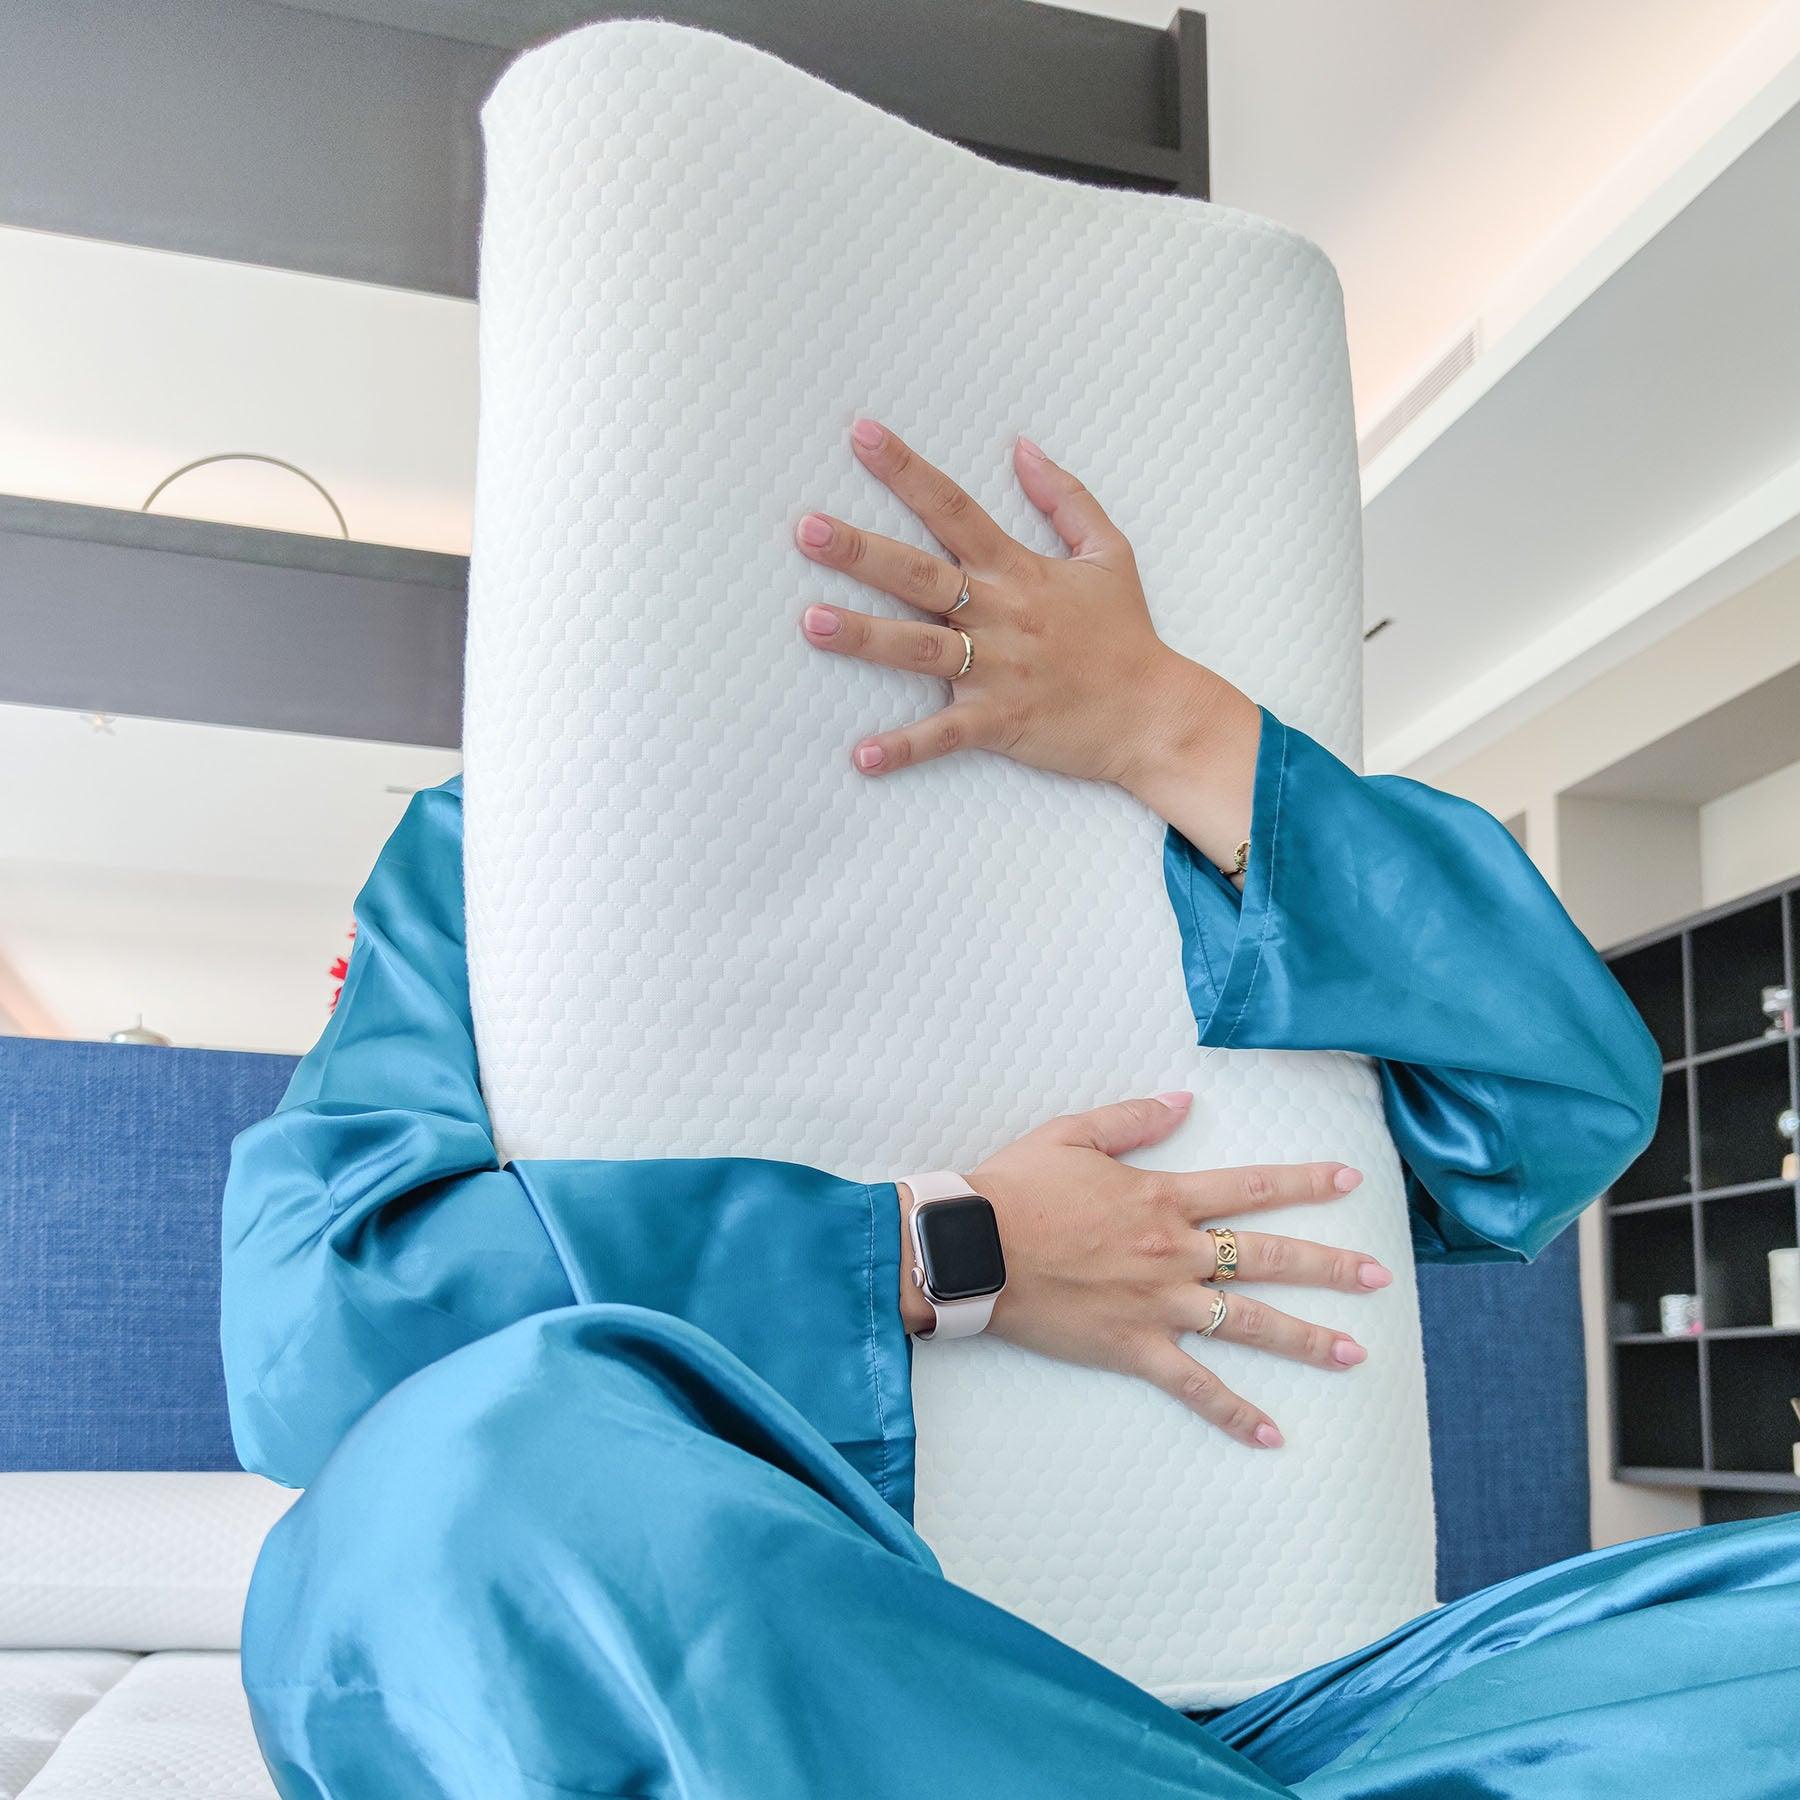 Particolare del cuscino antirussamento Fiordilattice di Beliamo, perfetto per un supporto ergonomico e un riposo rigenerante